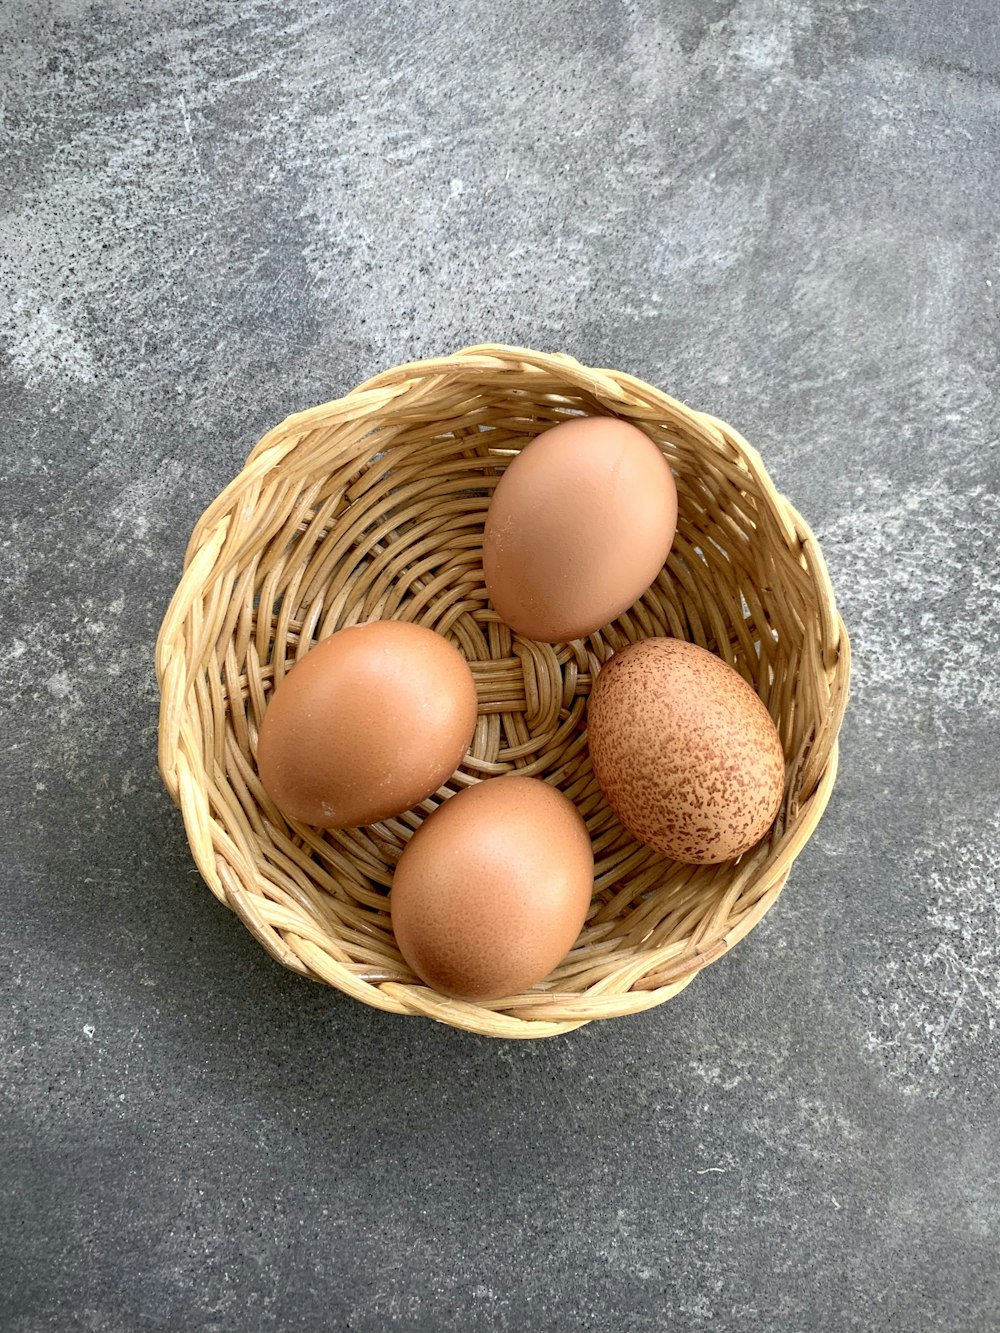 茶色の編まれたバスケットの茶色の卵